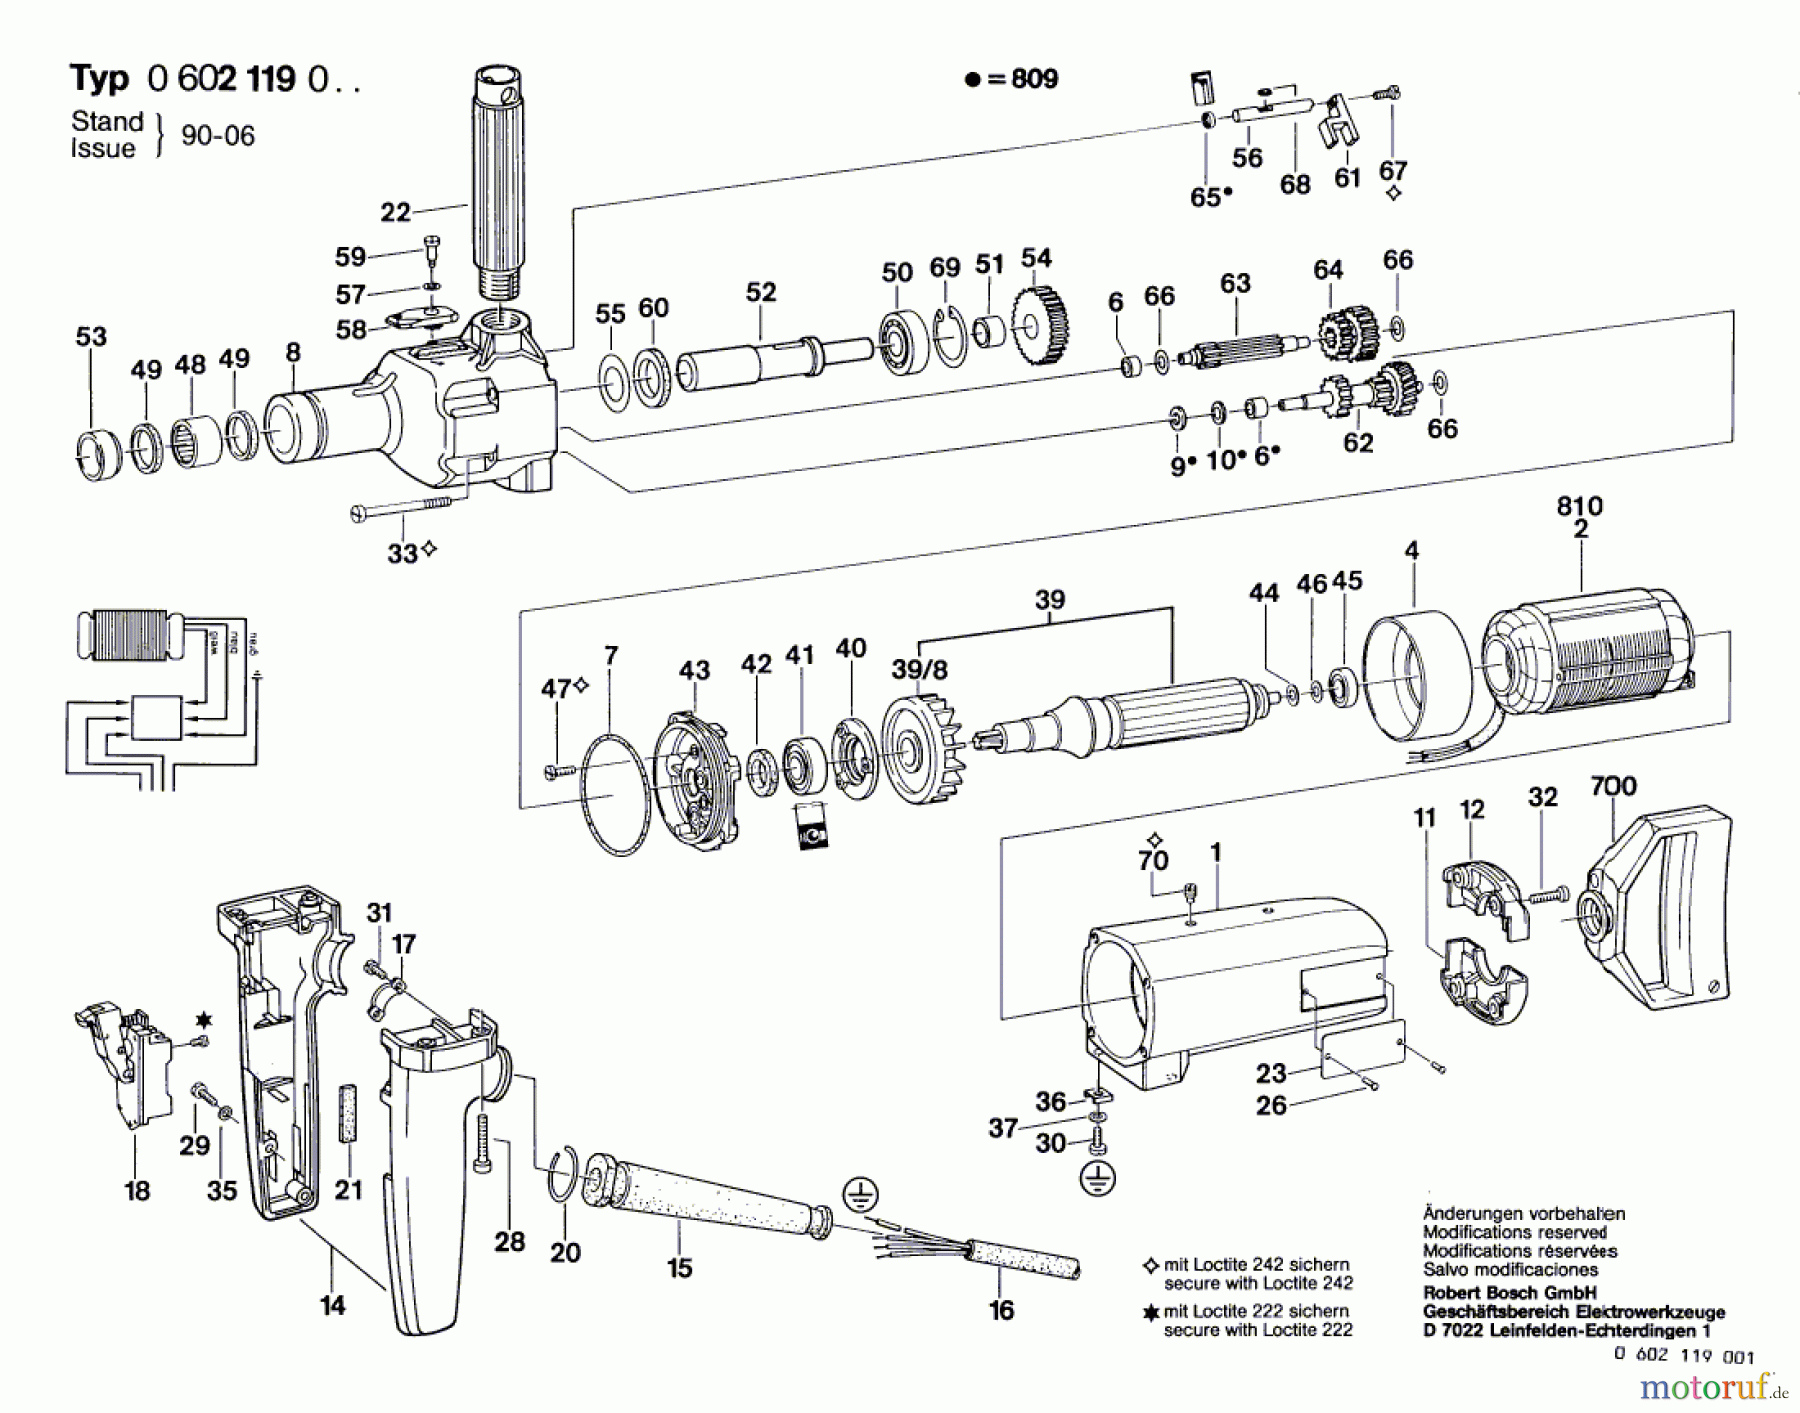  Bosch Werkzeug Hf-Bohrmaschine GR.77 Seite 1